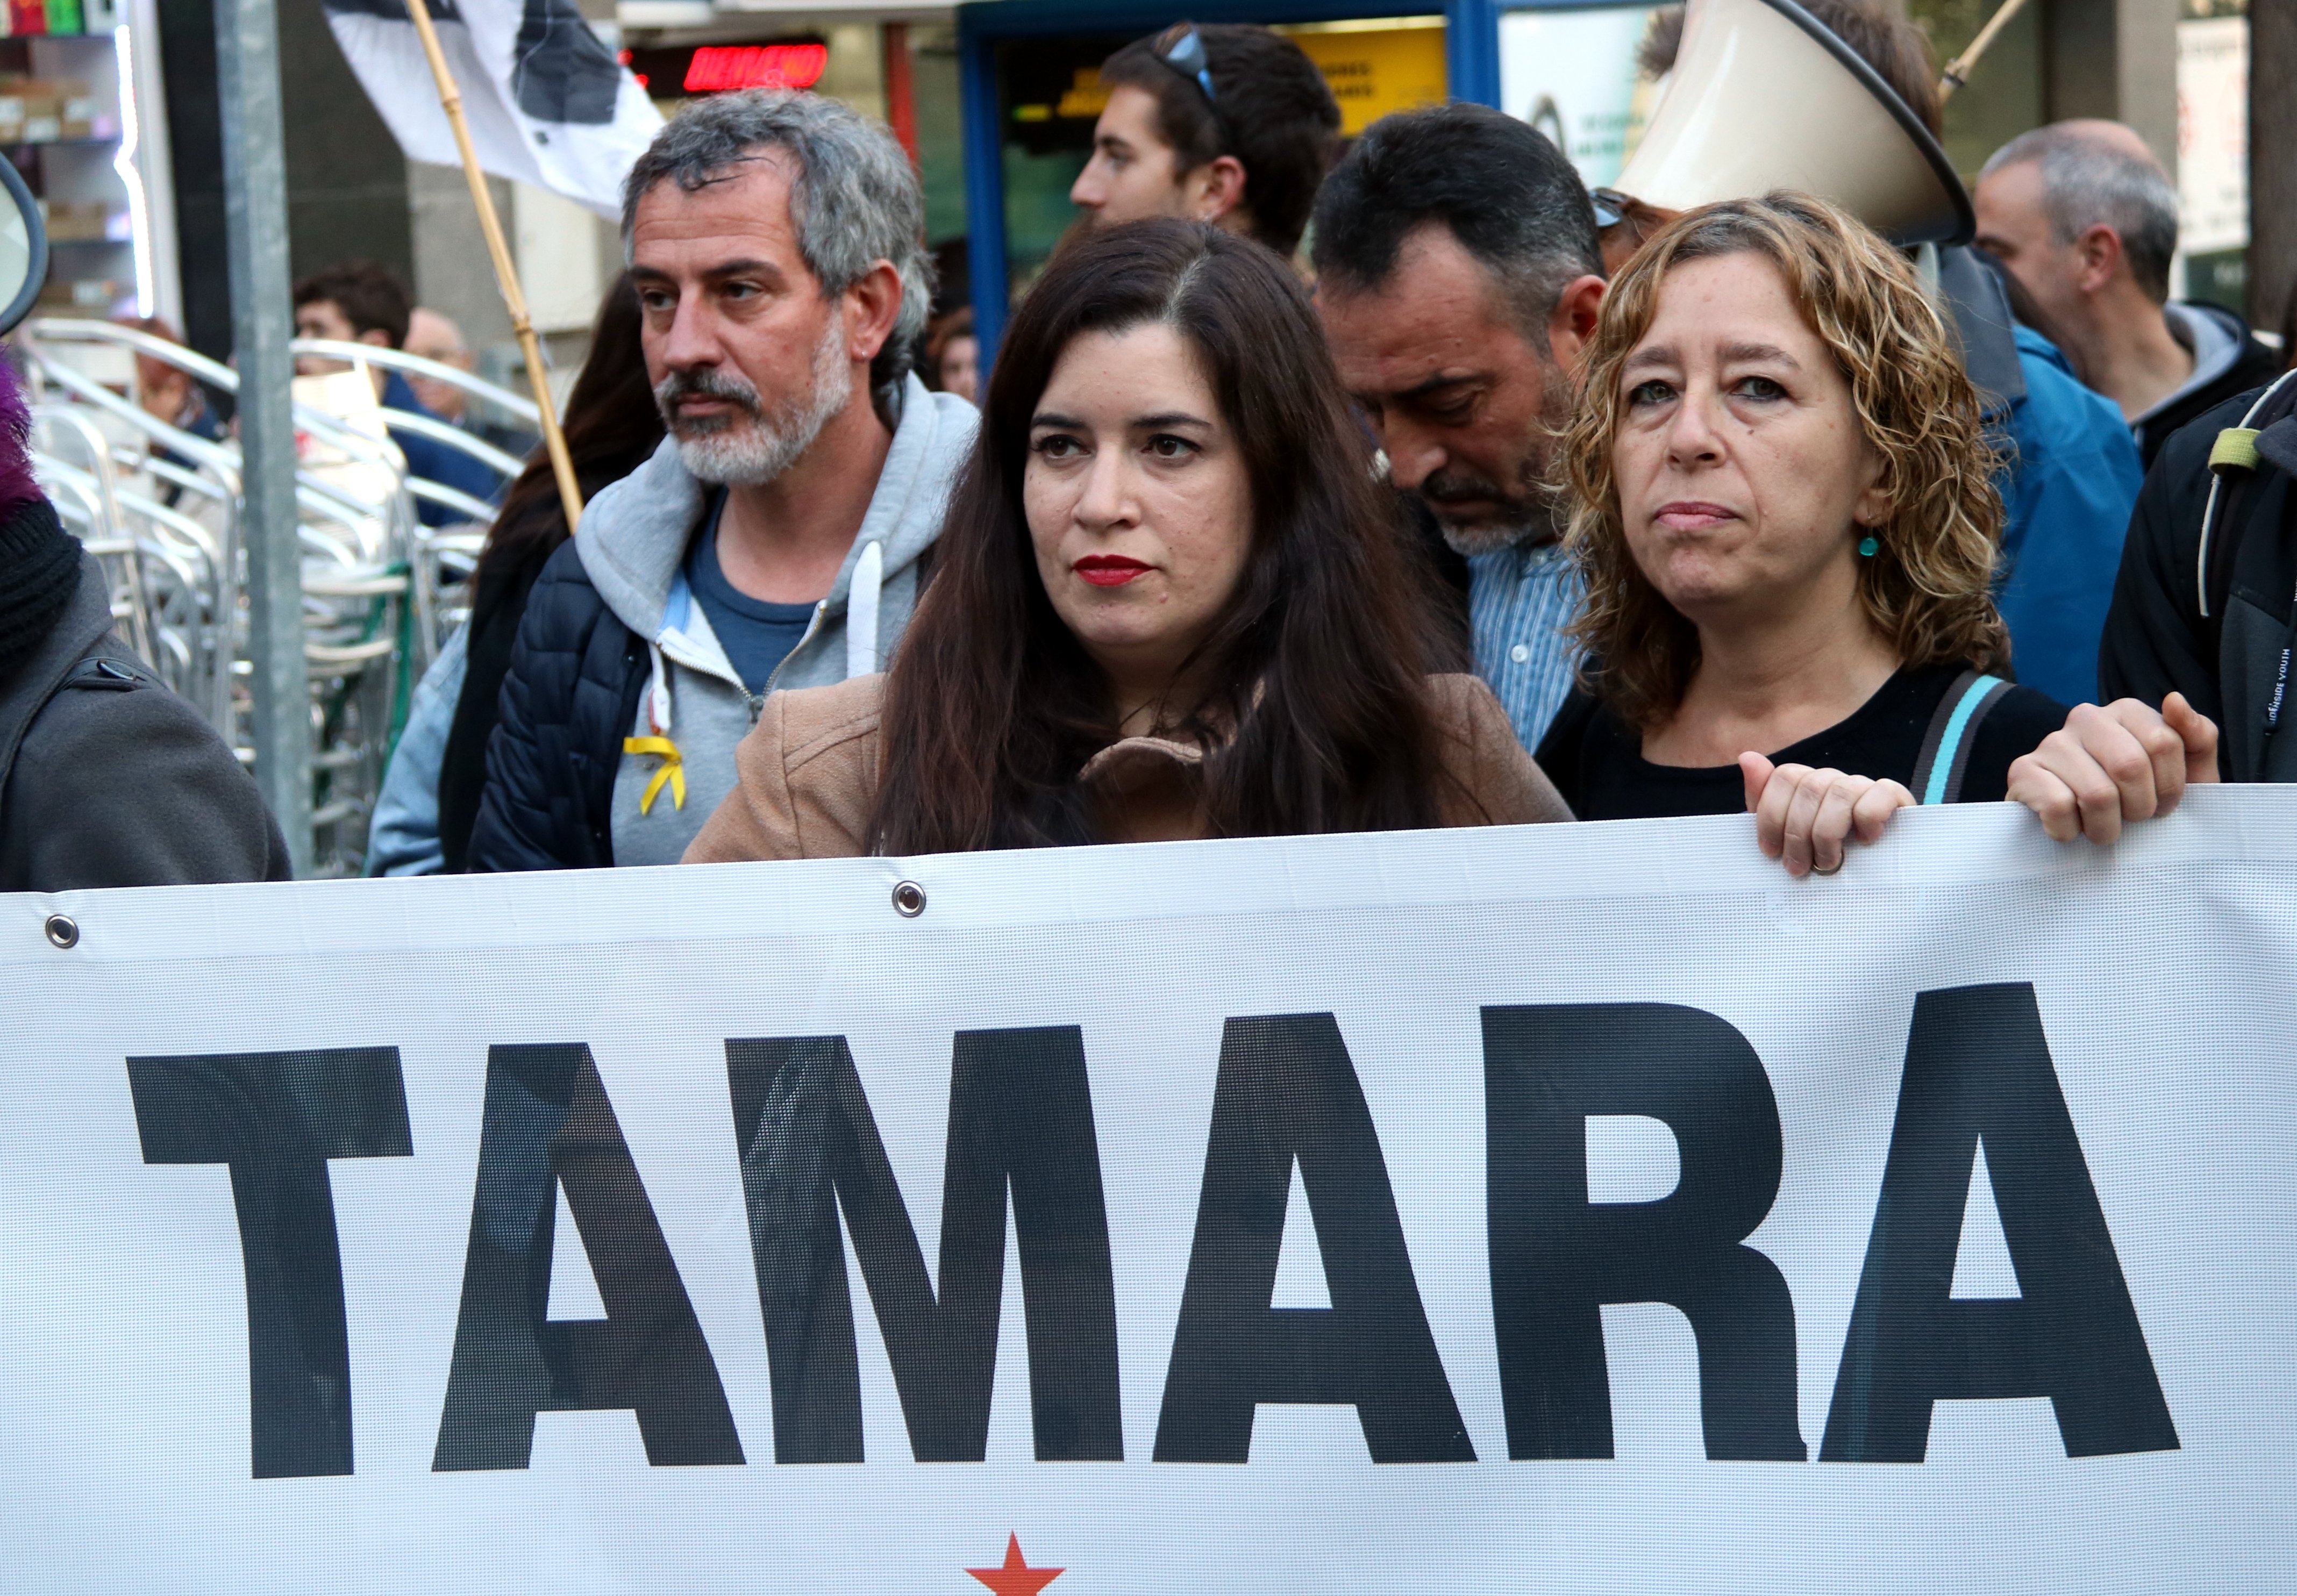 Levantan el confinamiento de Tamara Carrasco en Viladecans